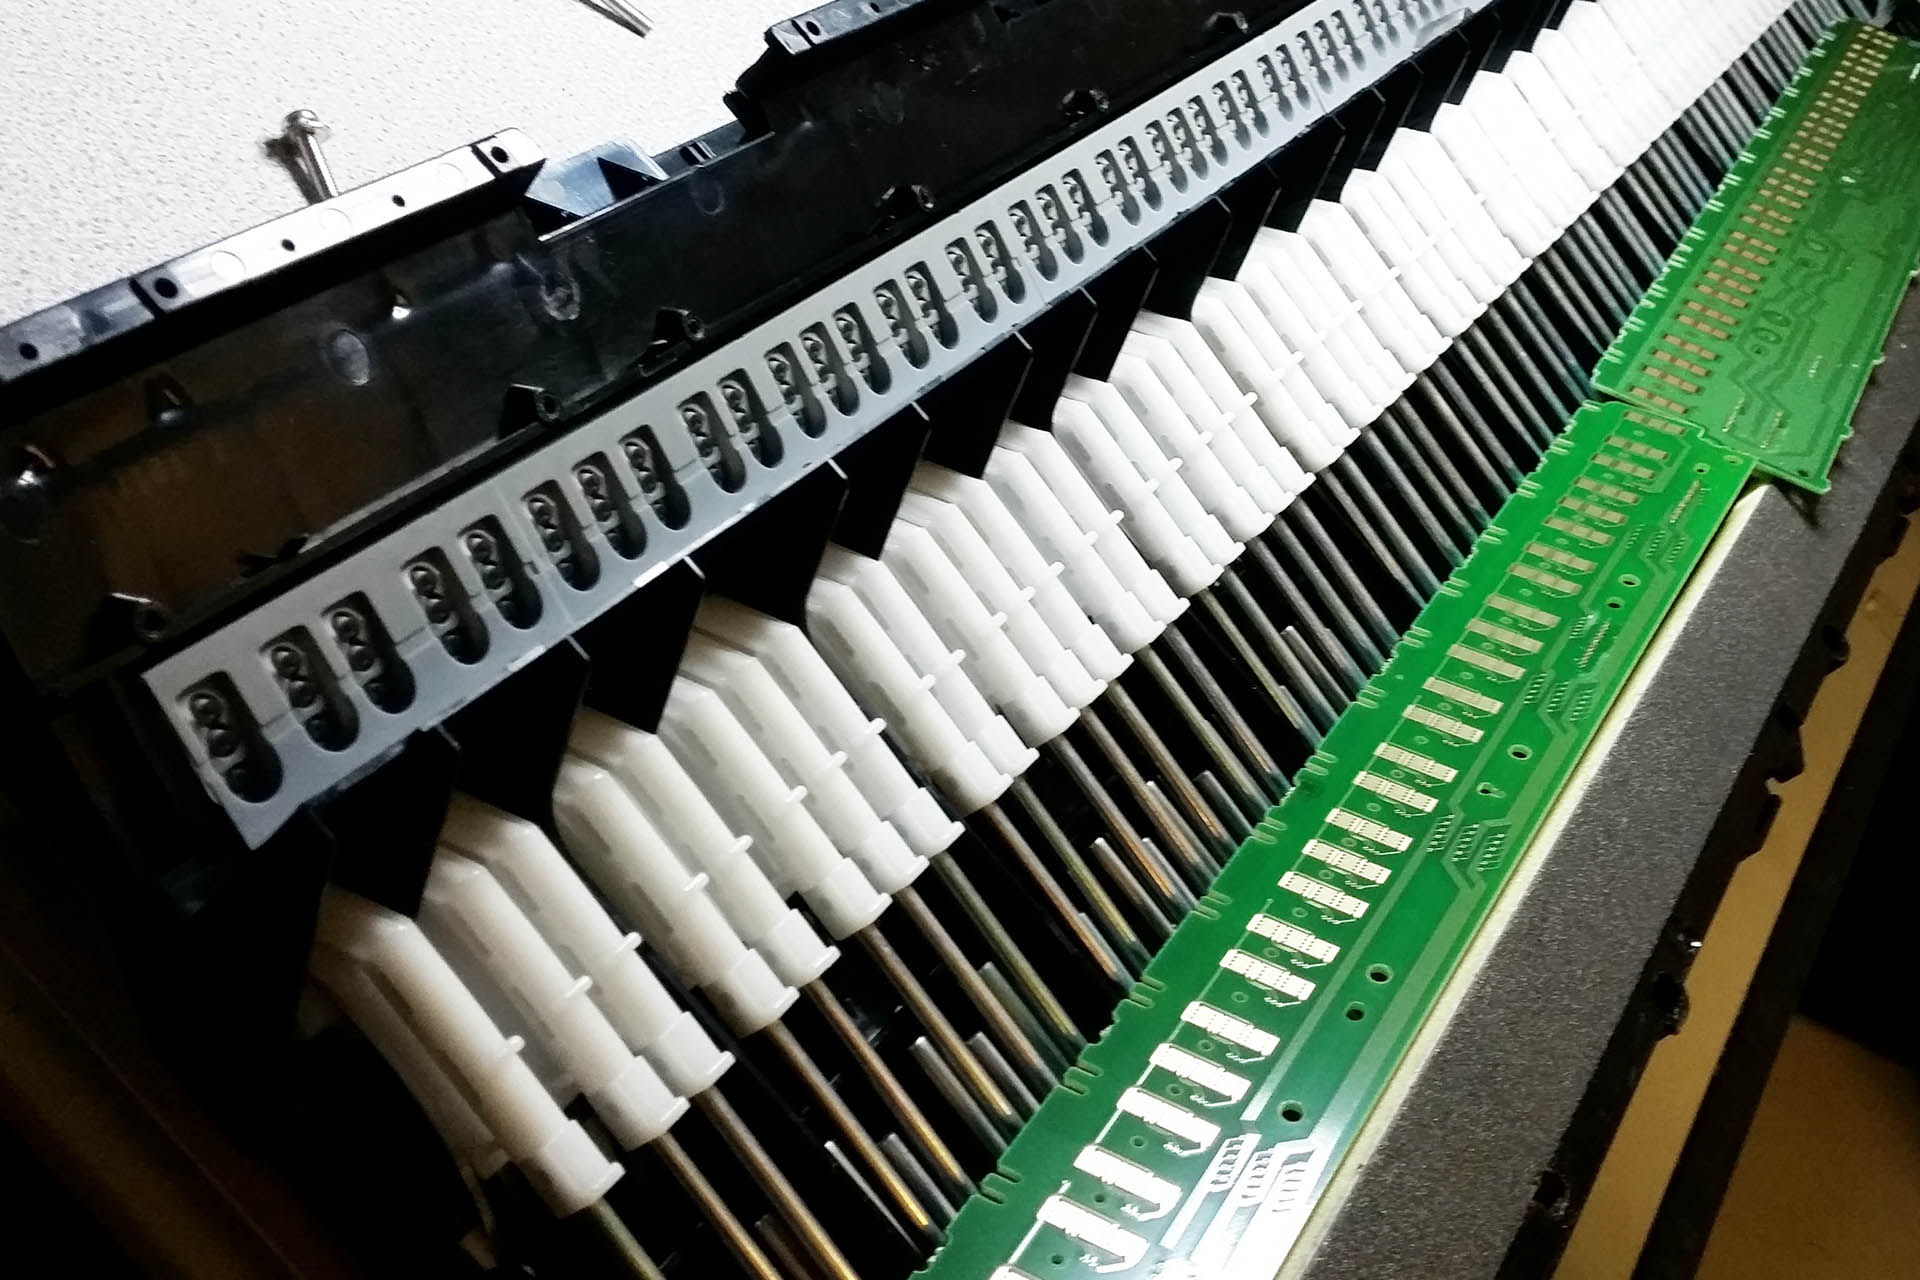 Keyboard repairs at Plasma Music - keyboard contact strip change